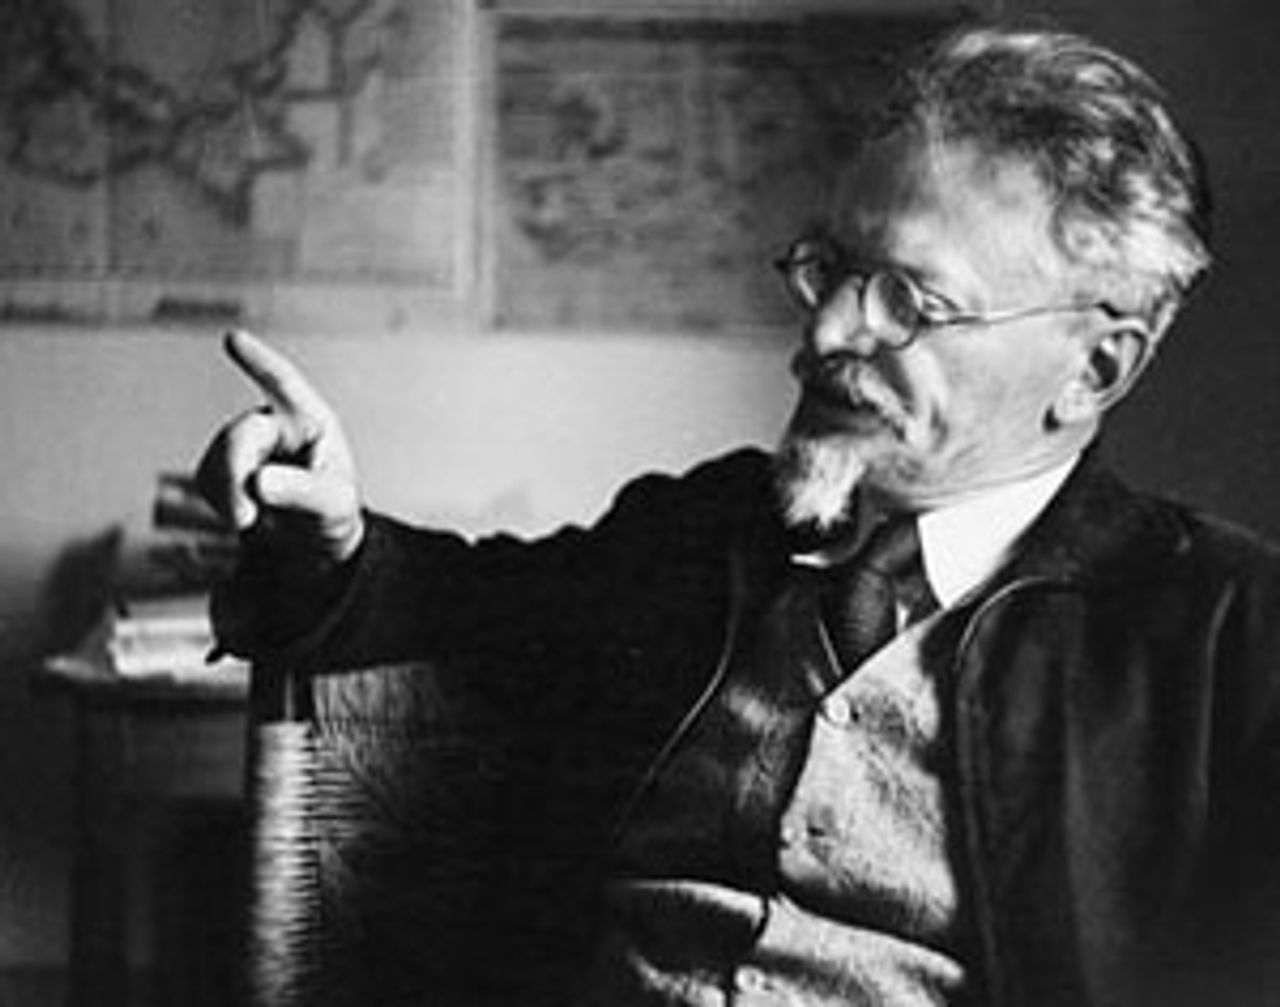 Trotsky